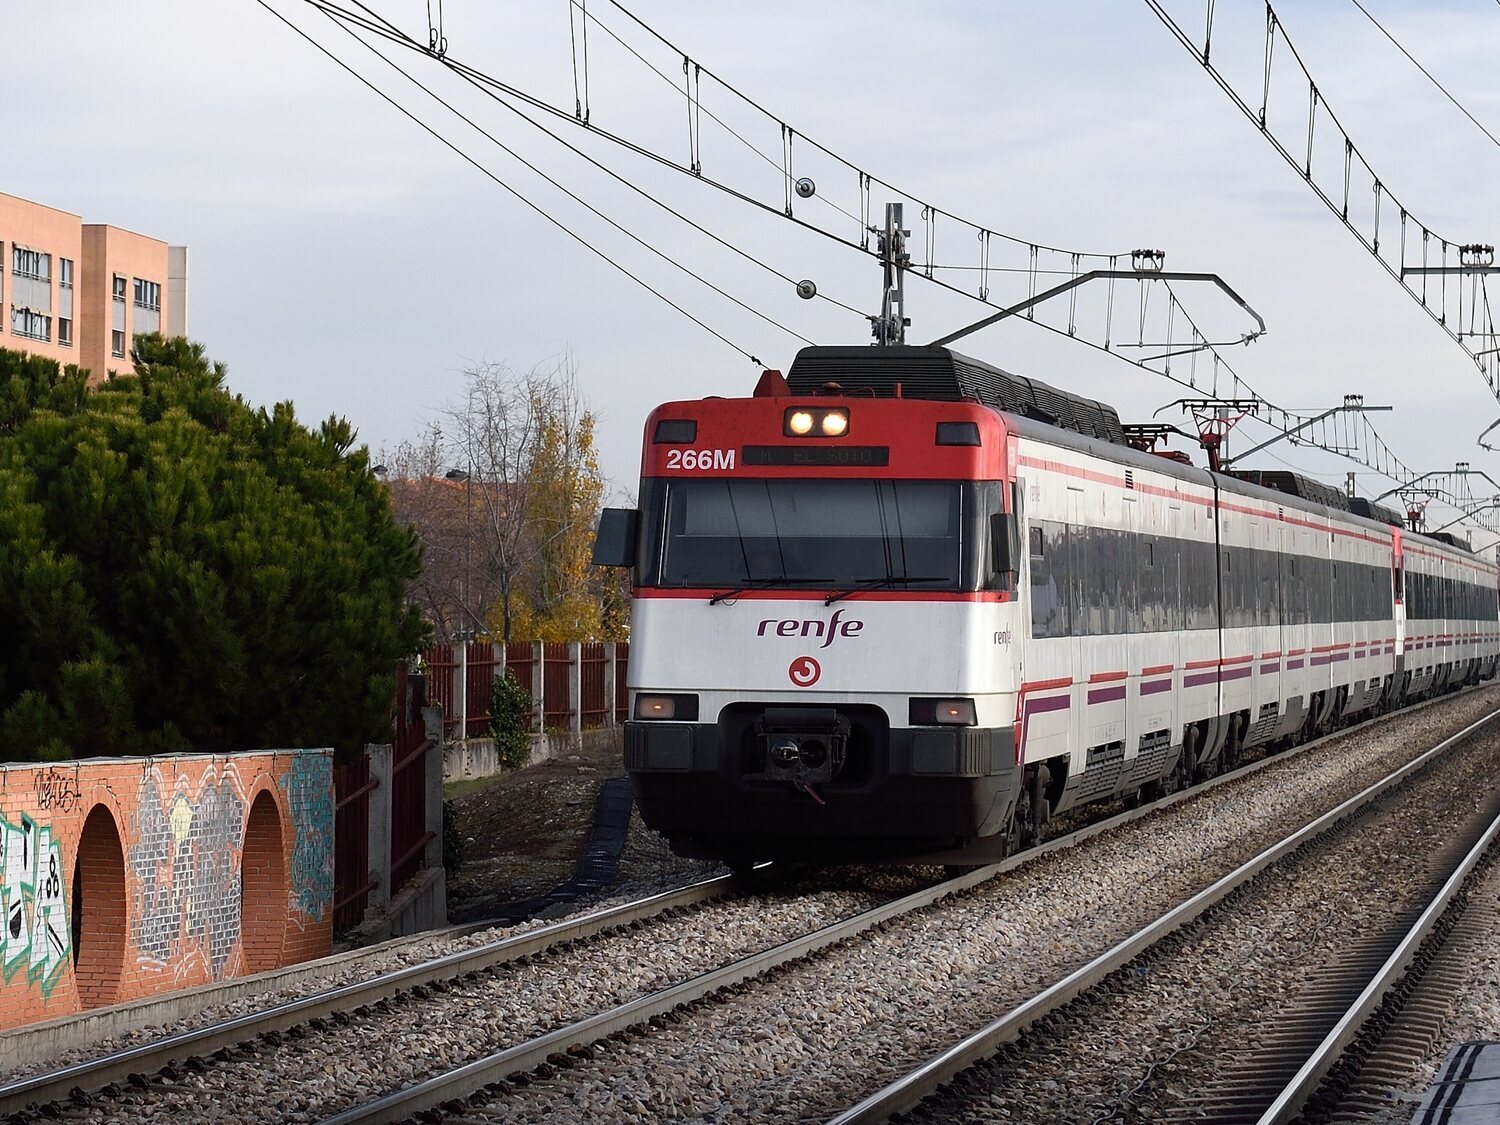 Pánico en Cercanías: evacuan un tren repleto de pasajeros en Vallecas entre una intensa columna de humo